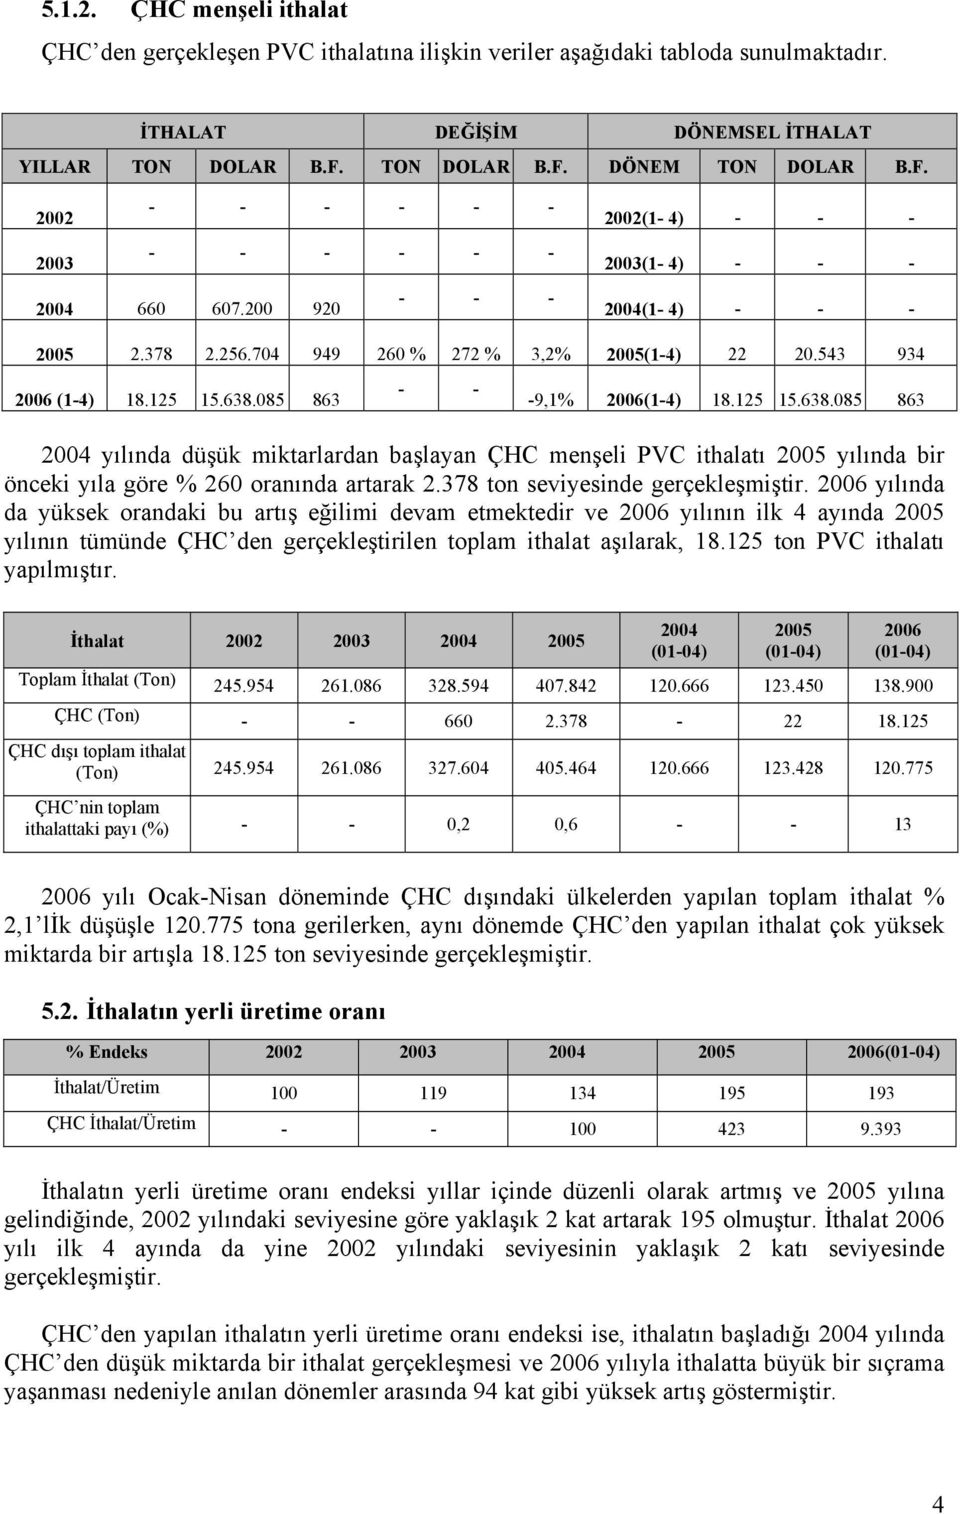 085 863 - - -9,1% 2006(1-4) 18.125 15.638.085 863 yılında düşük miktarlardan başlayan ÇHC menşeli PVC ithalatı yılında bir önceki yıla göre % 260 oranında artarak 2.